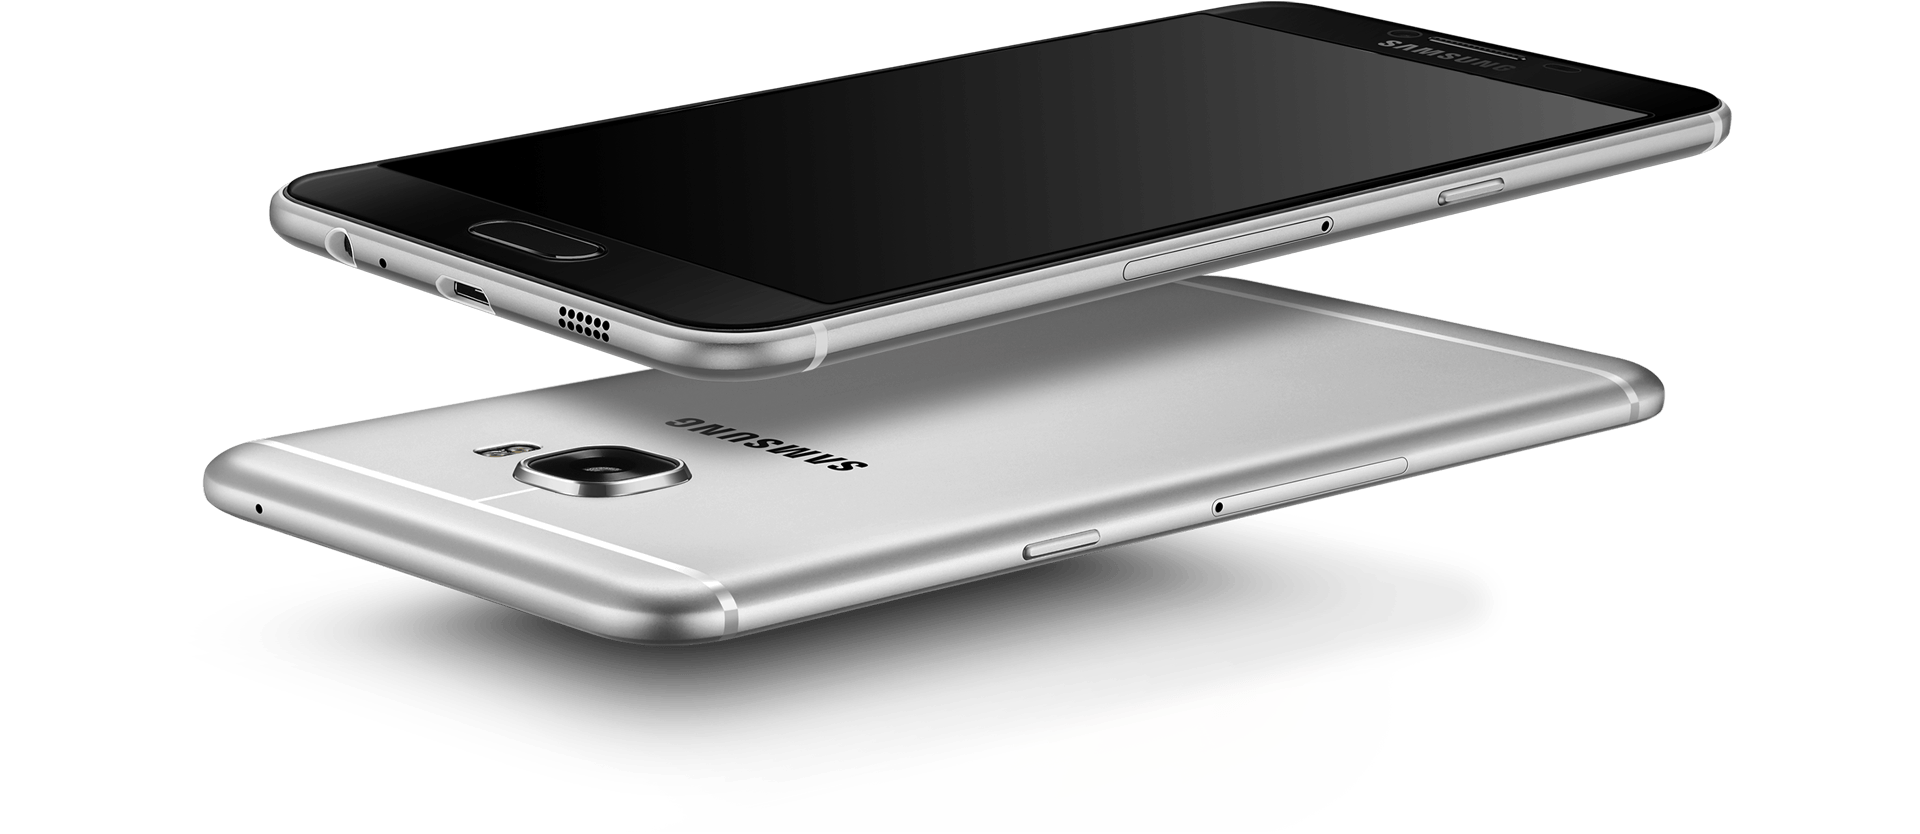 Samsung annonce ses Galaxy C5 et C7, avec de faux airs d’iPhone